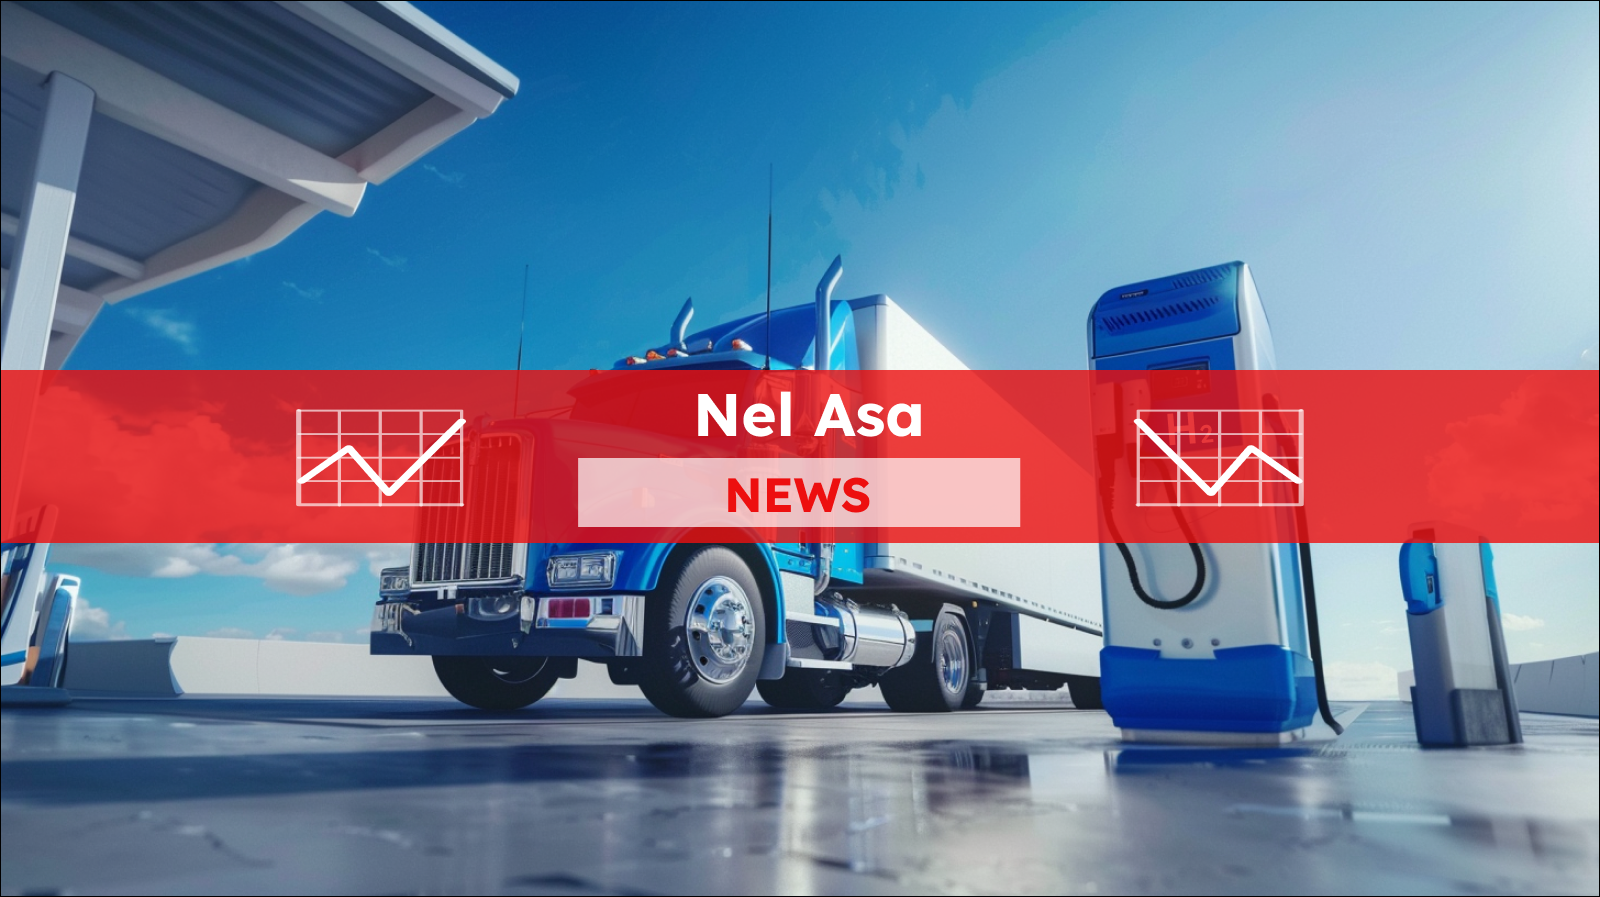 Ein Wasserstoff-Brennstoffzellen-LKW ist an einer Tankstelle unter strahlend blauem Himmel, mit einem Nel ASA NEWS-Banner drüber